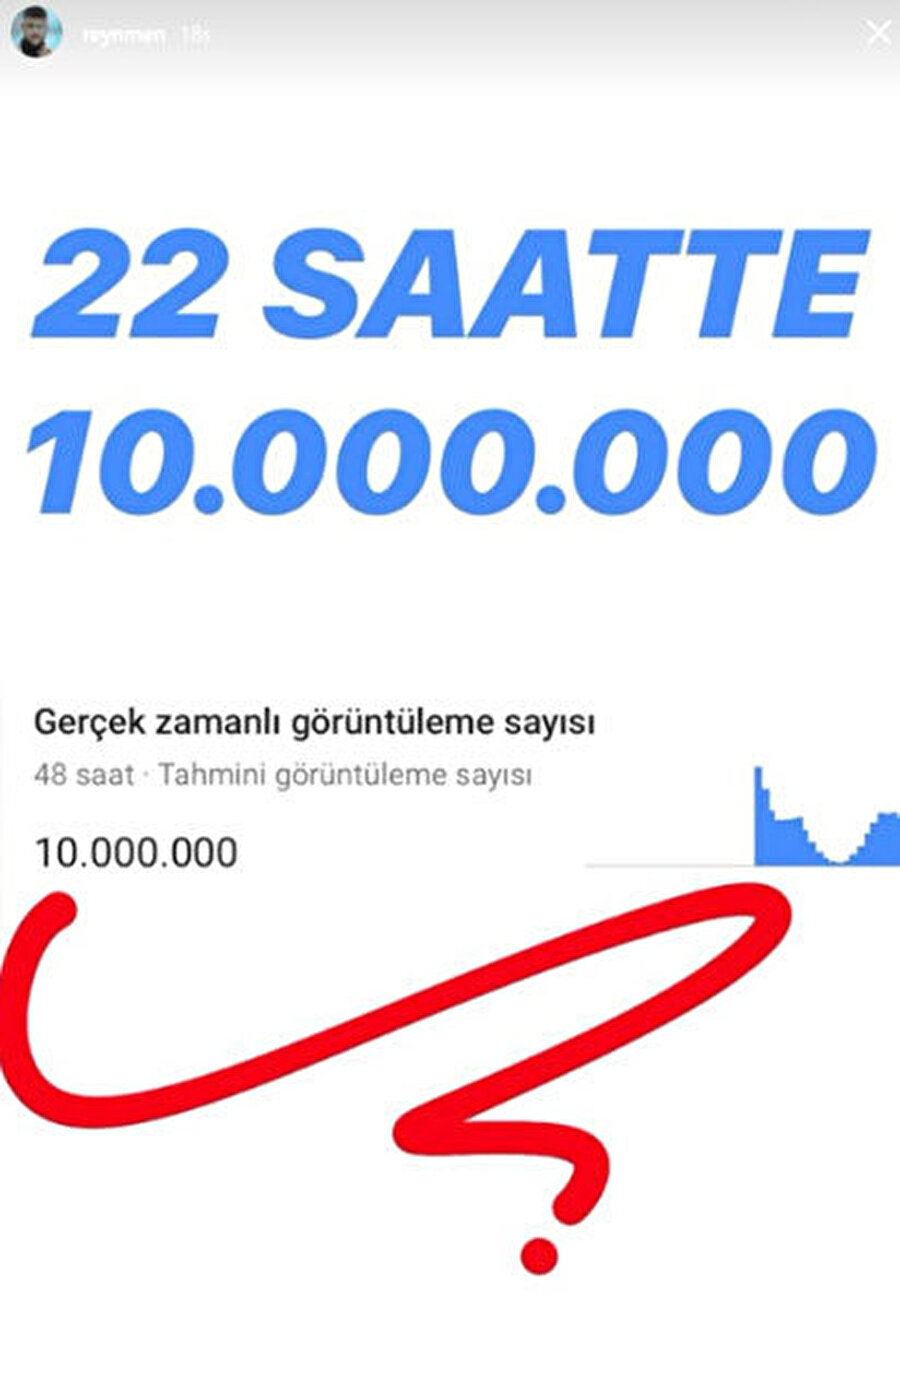 Reynmen, 'Derdim Olsun' klibinin 22 saatte 10 milyon izlenmeye ulaştığını Instagram'dan yaptığı bu paylaşım ile duyurdu.